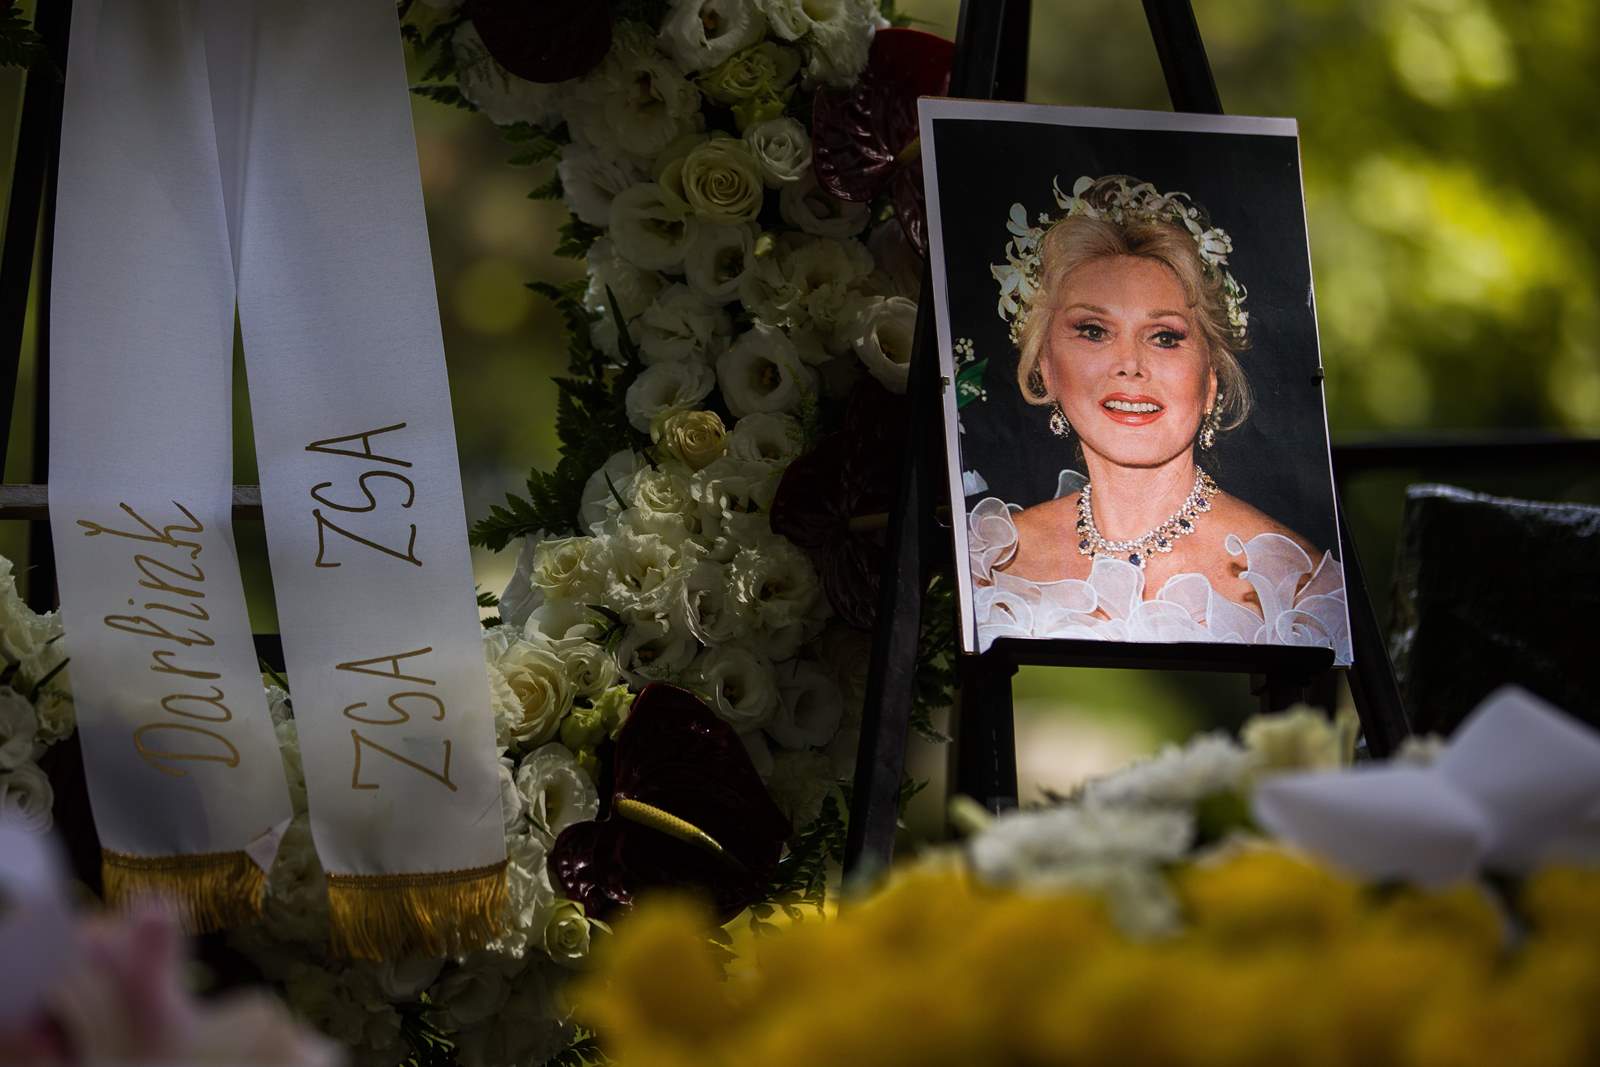 Las cenizas de Zsazsa Gábor fueron sepultadas el martes en el cementerio de la calle Fiumei en Budapest, casi cinco años después de su muerte.